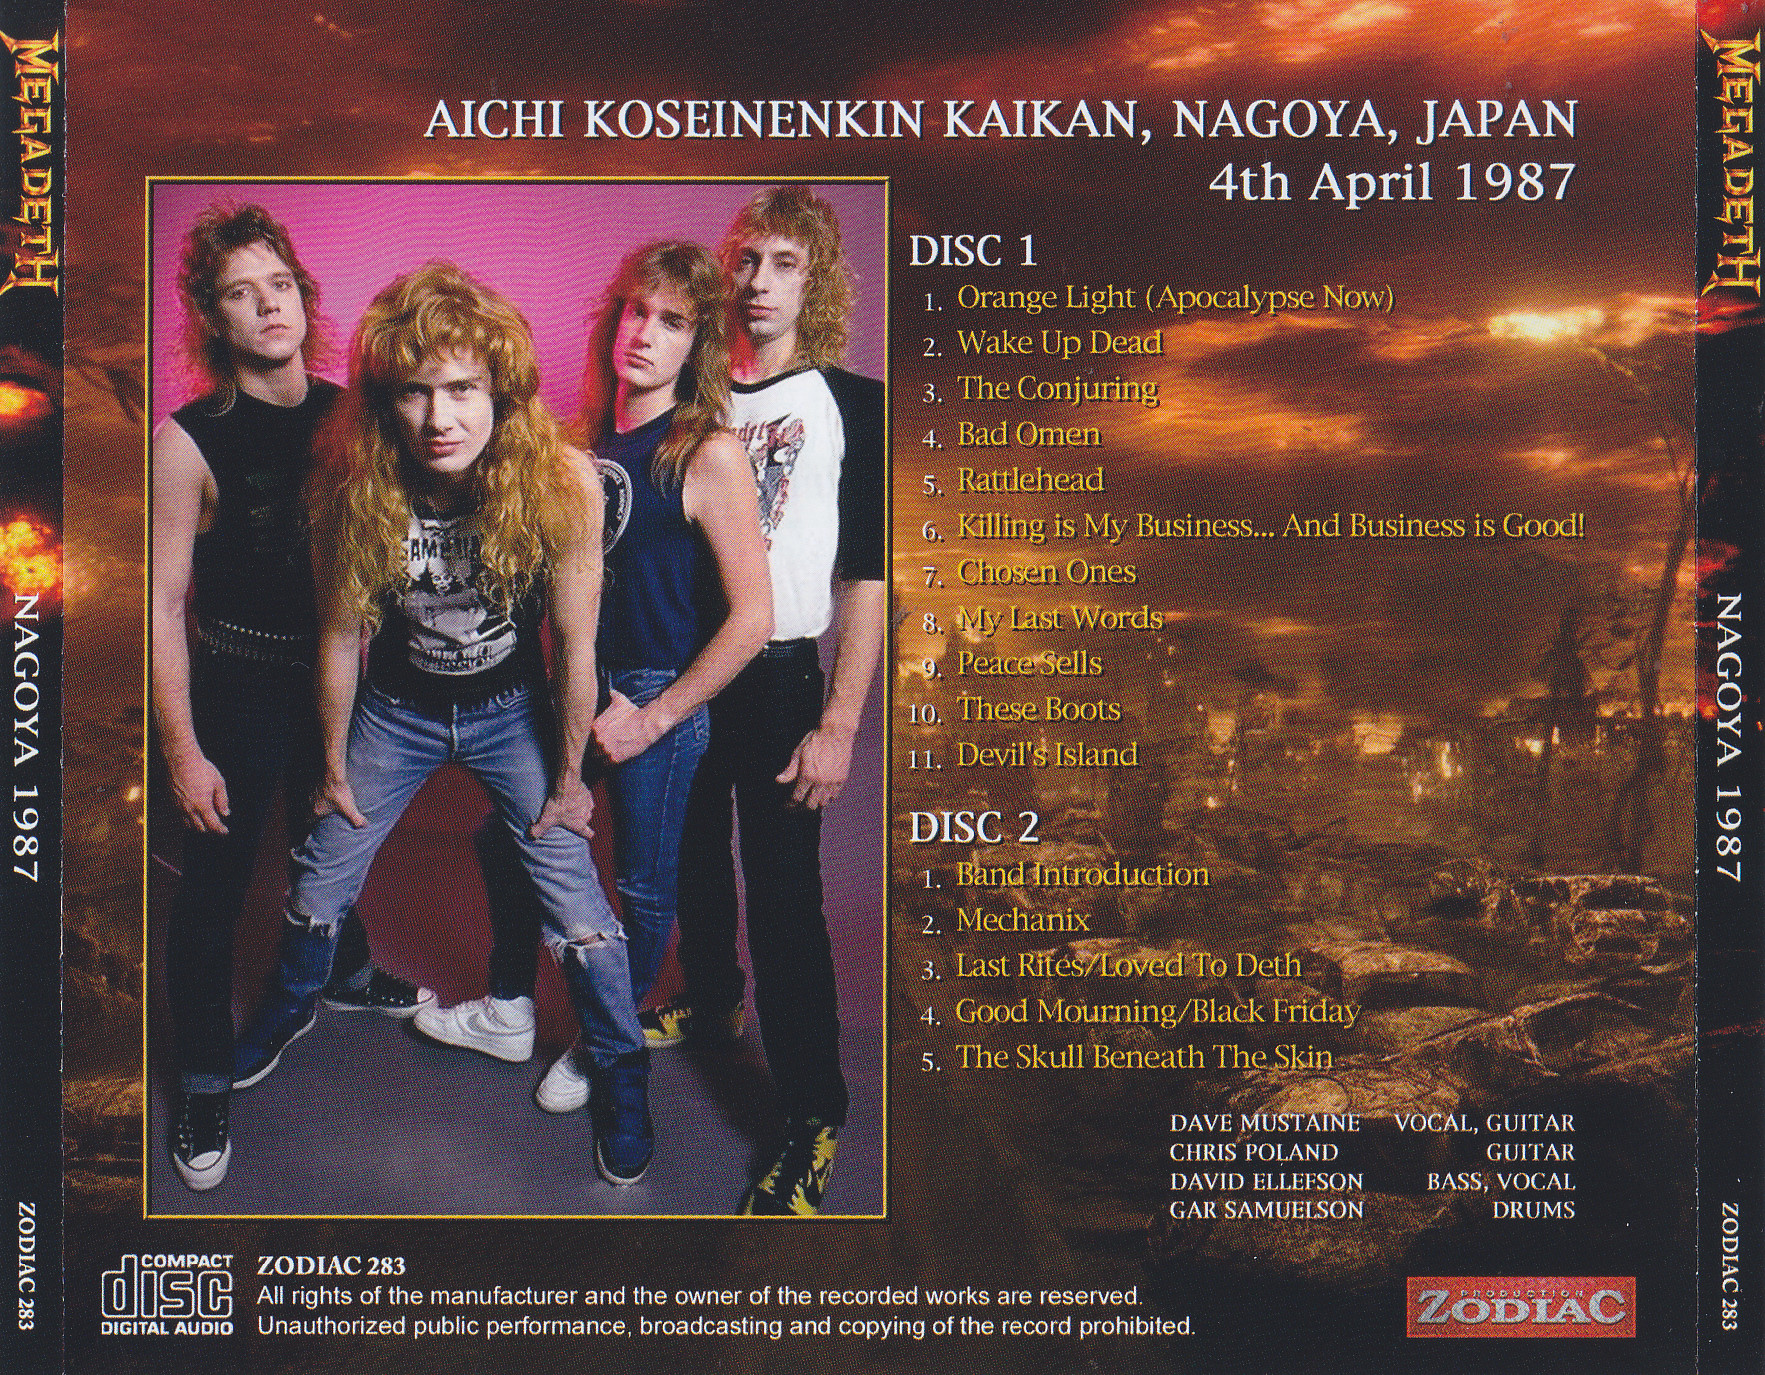 Megadeth / Nagoya 1987 / 2CD+2Bonus CDR – GiGinJapan